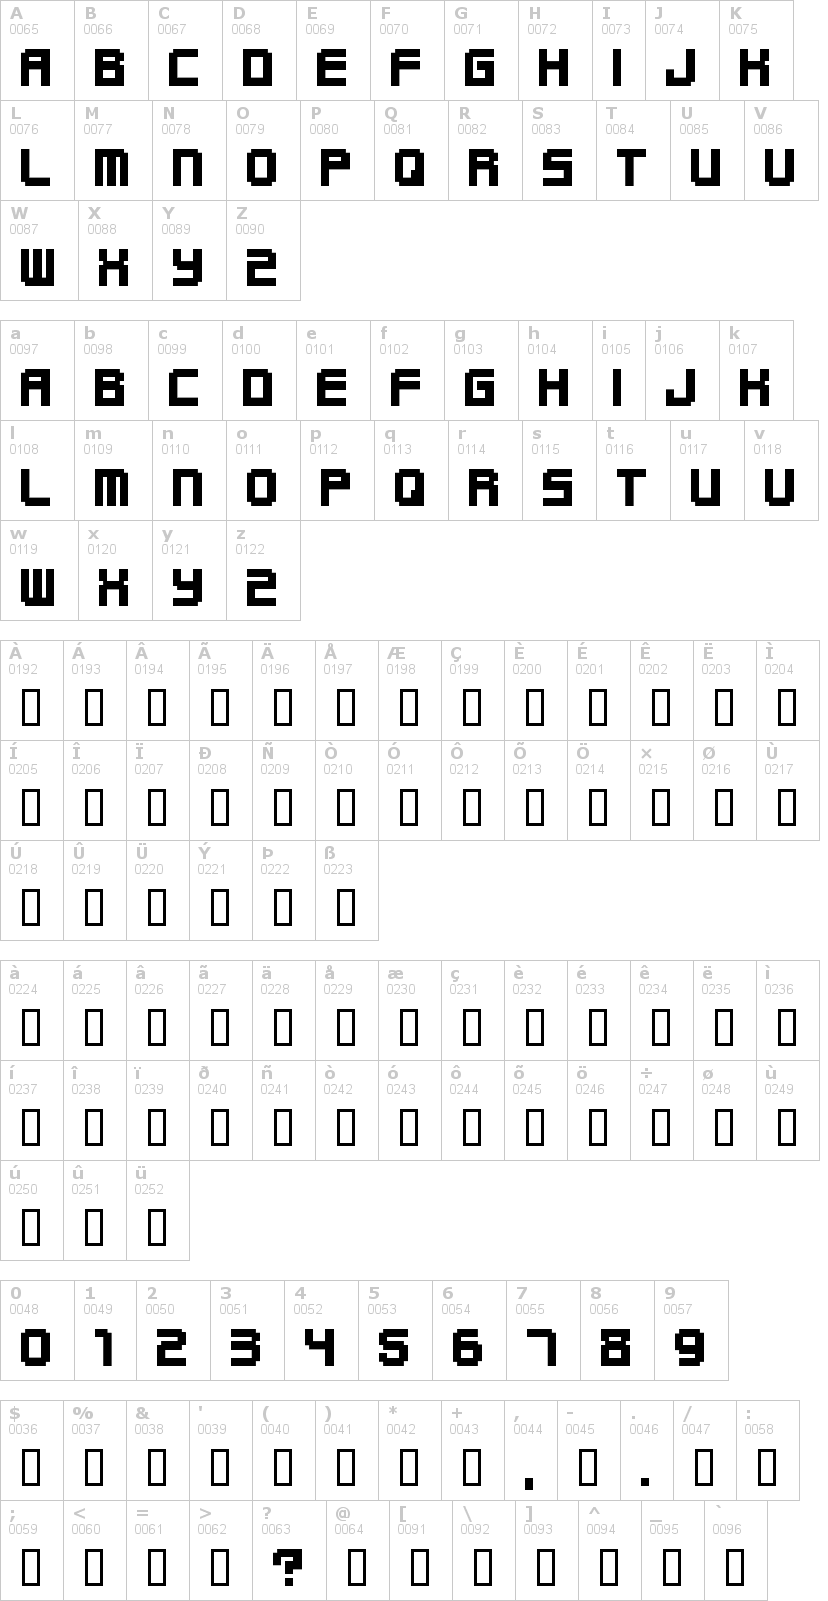 Lettere dell'alfabeto del font funky con le quali è possibile realizzare adesivi prespaziati